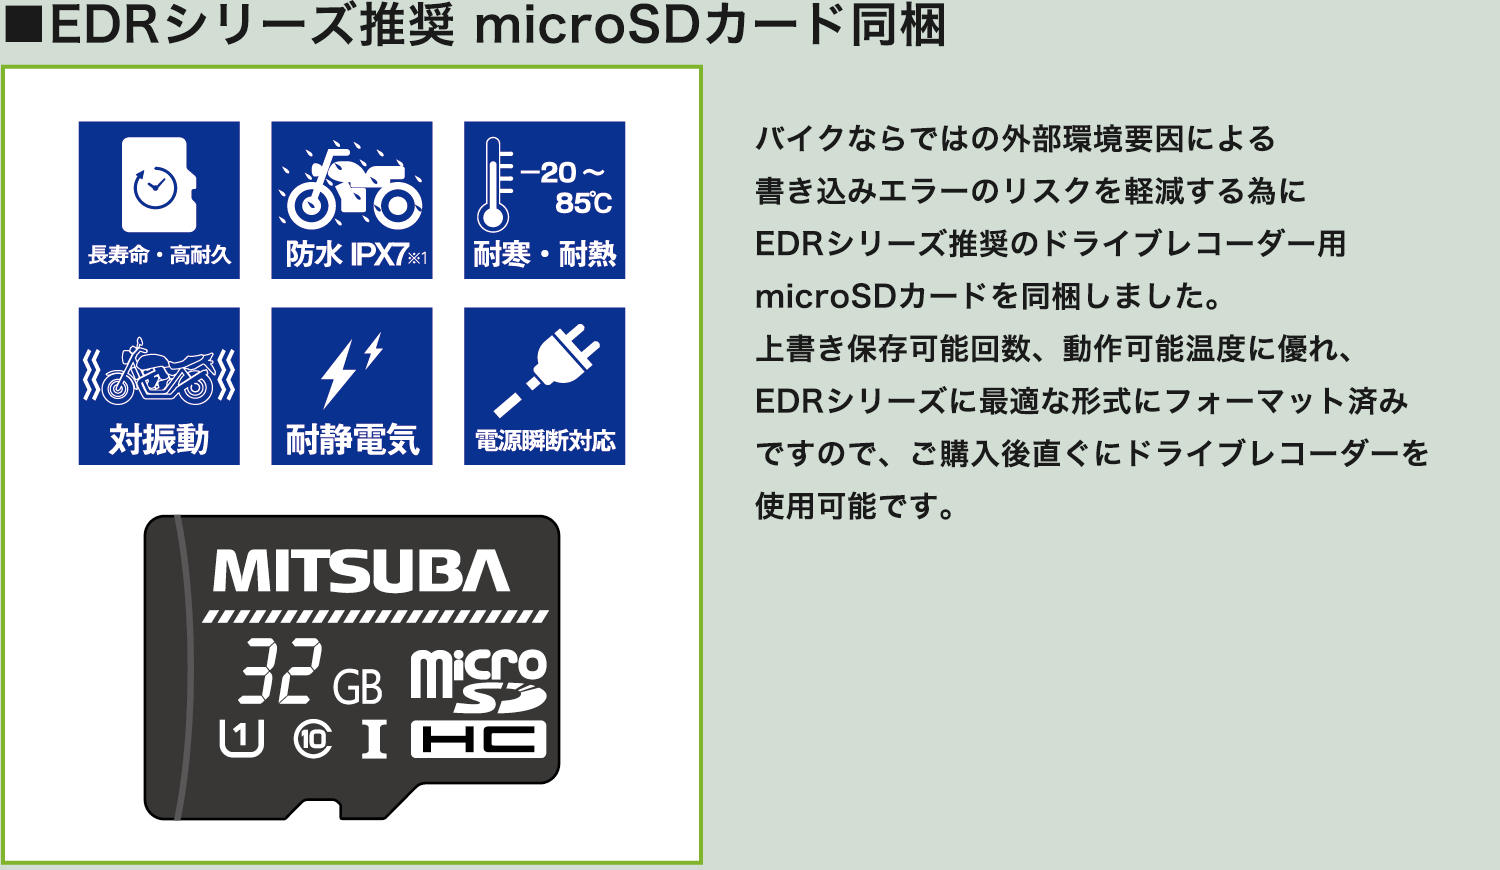 MITSUBA バイク専用ドライブレコーダー 32GB (前後2カメラモデル）